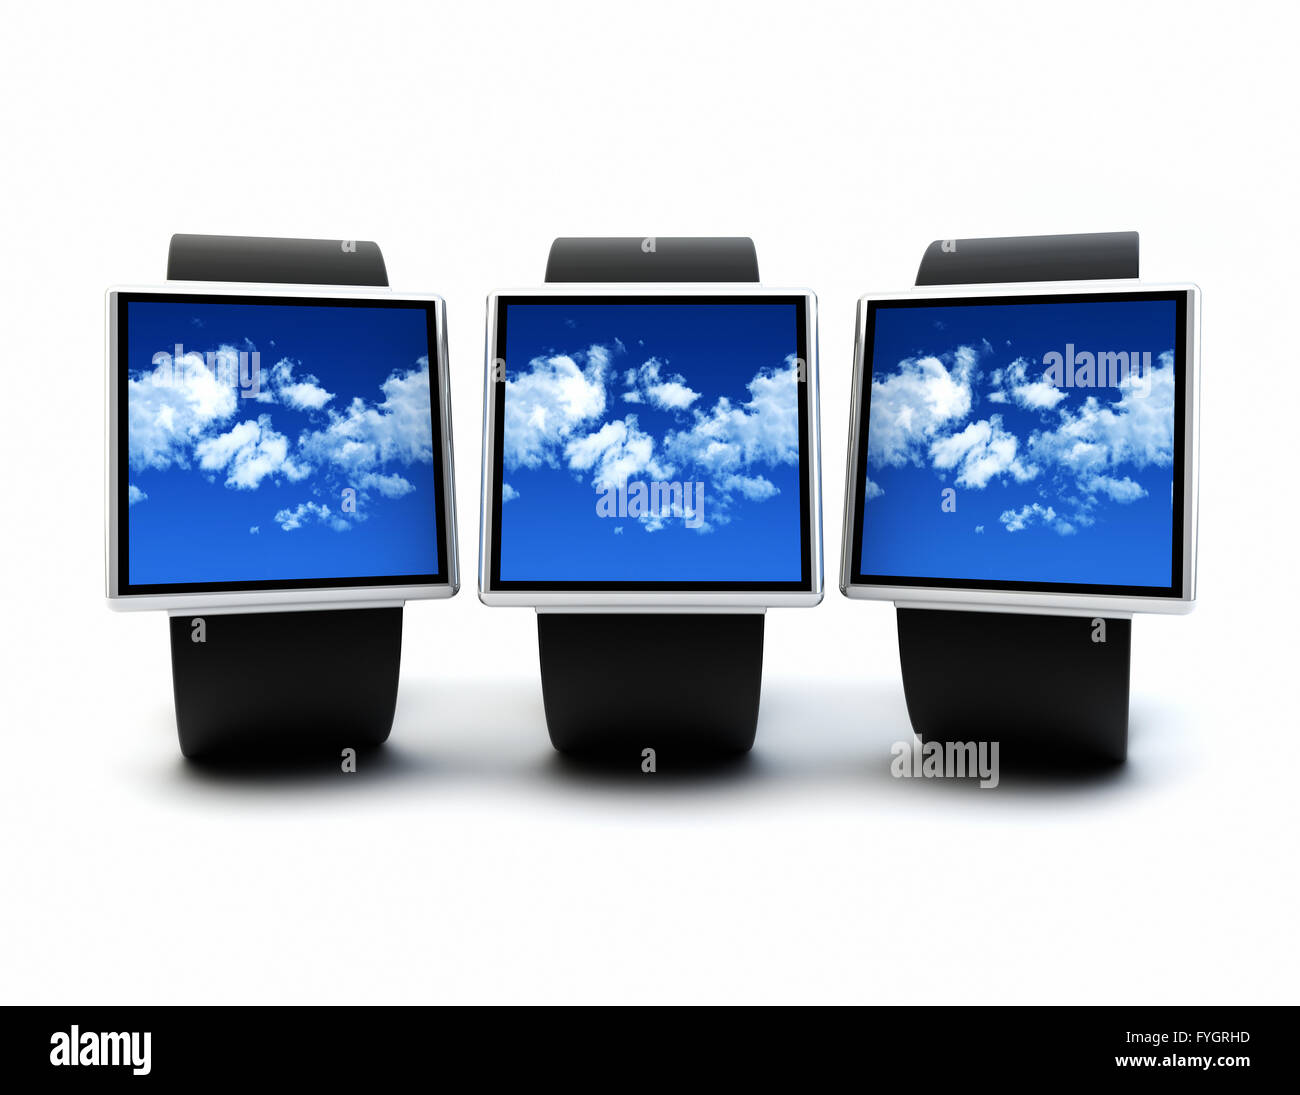 La movilidad y la nube dispositivo portátil concepto tecnológico: colección de relojes inteligentes digitales aisladas sobre fondo blanco. Foto de stock